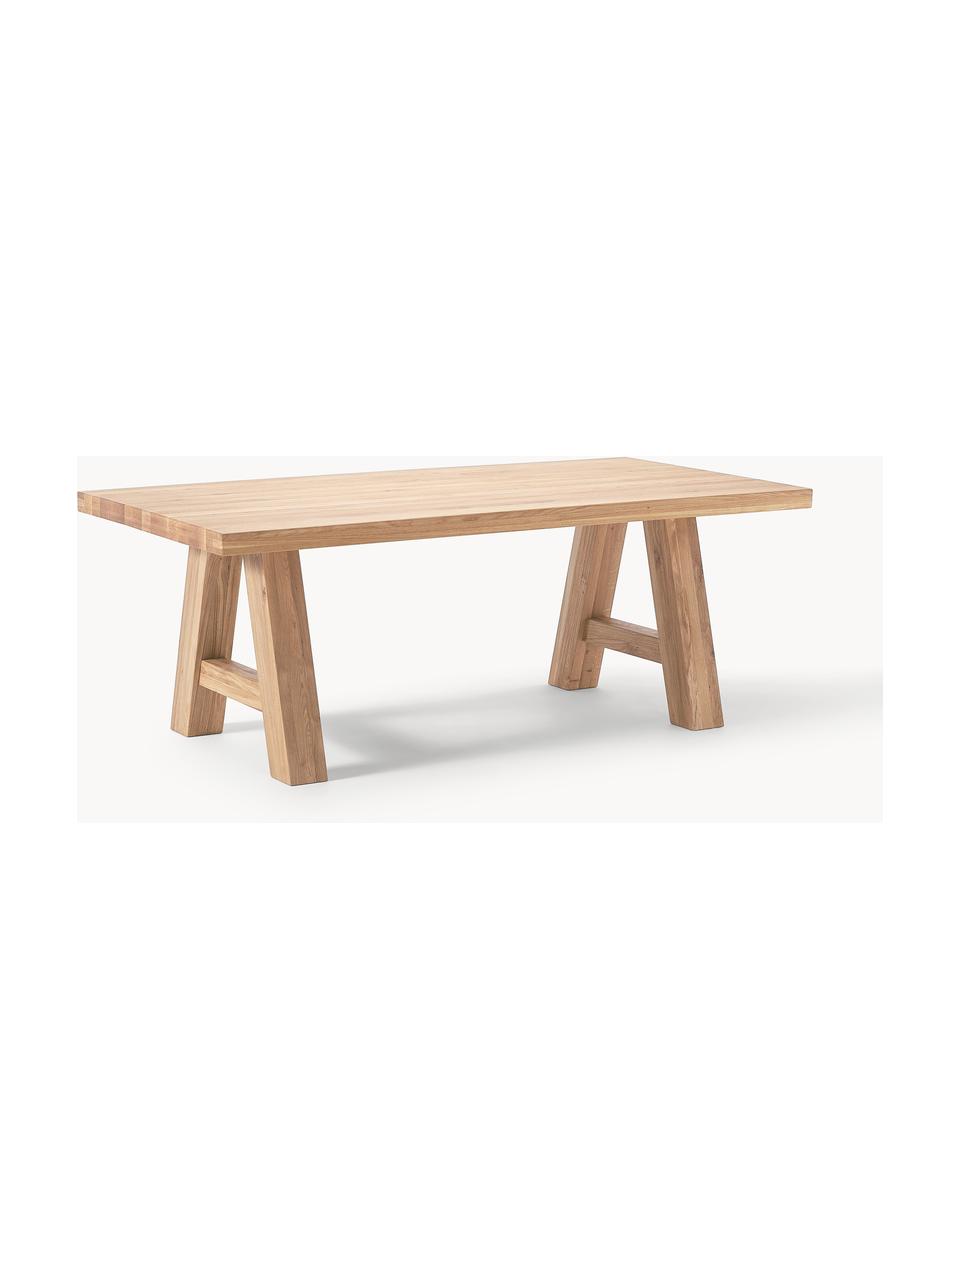 Jedálenský stôl z dubového dreva Ashton, rôzne veľkosti, Masívne dubové drevo, jemne naolejované 

100 % drevo z udržateľného lesného hospodárstva
Tento produkt je vyrobený z trvalo udržateľného dreva s certifikátom FSC®., Dubové drevo, ošetrené svetlým olejom, Š 220 x H 100 cm